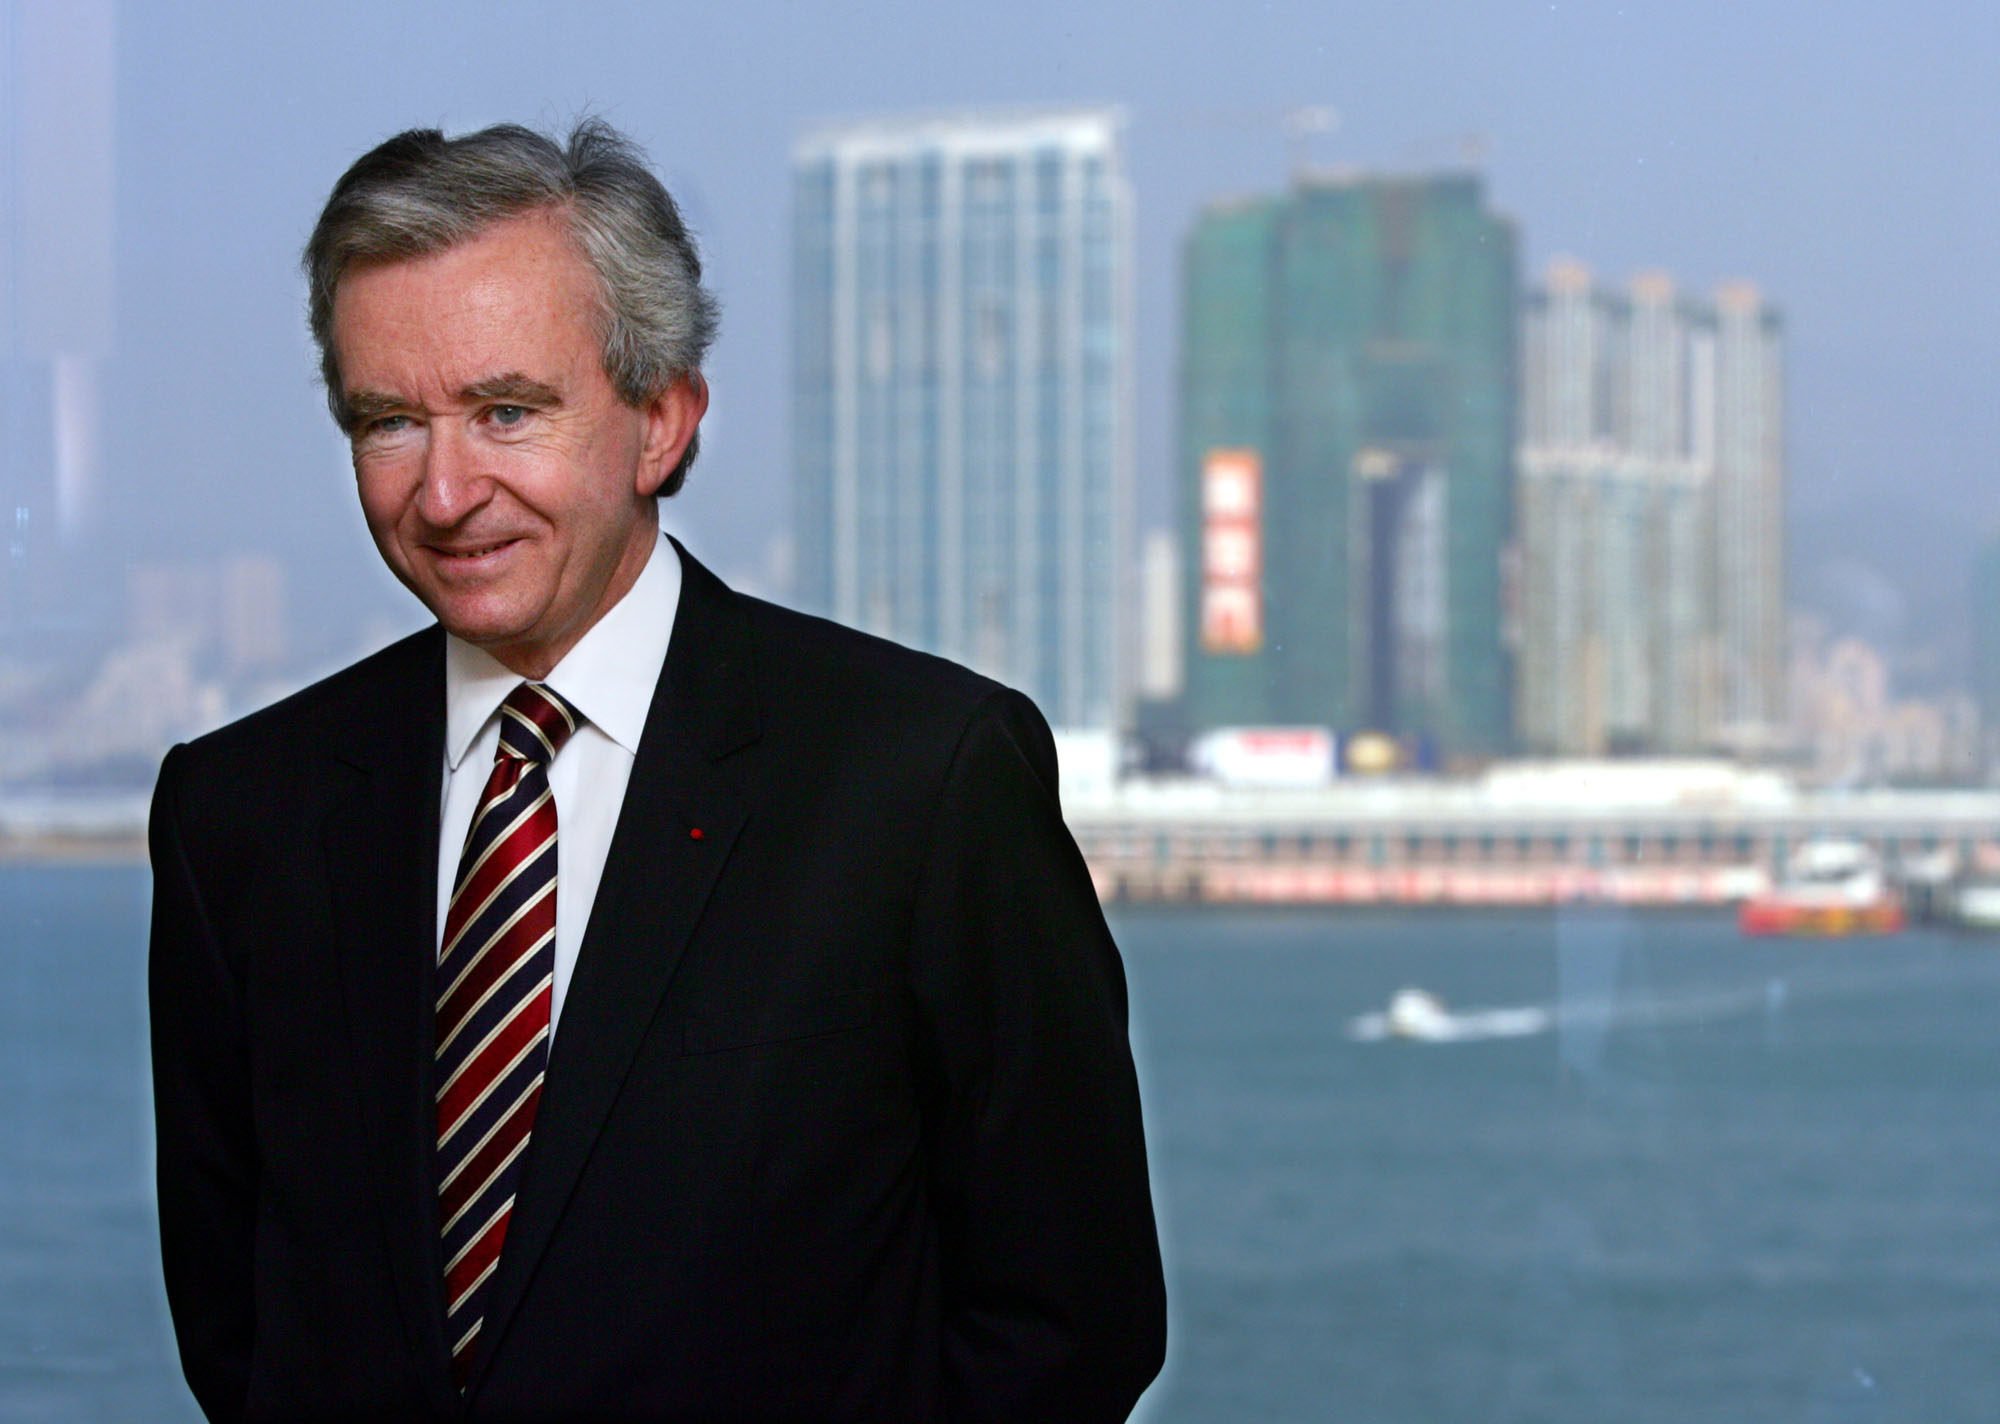 LVMH Billionaire CEO Bernard Arnault Arrives in China - BNN Bloomberg